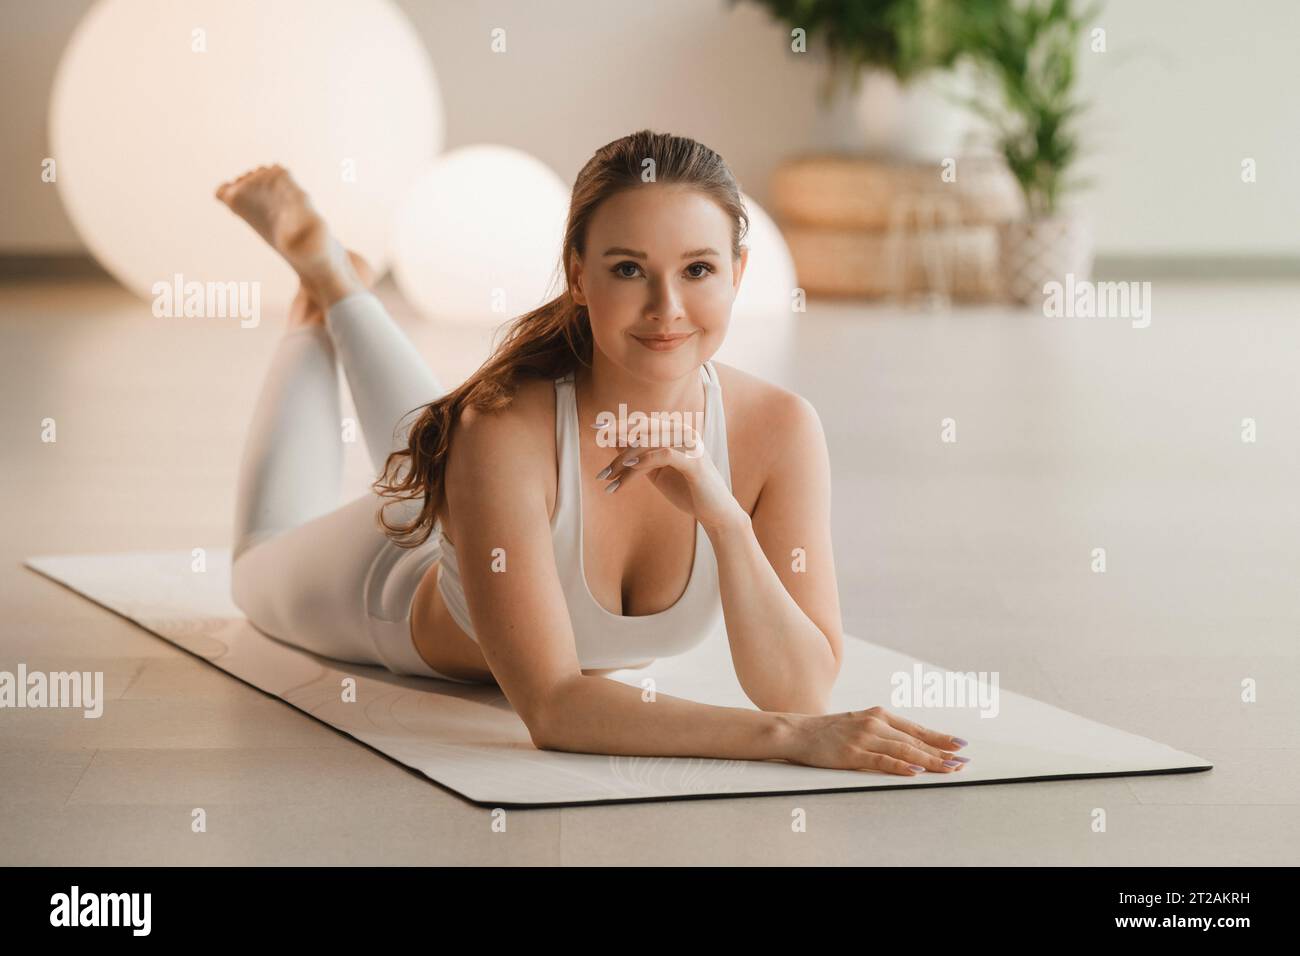 Ritratto di una ragazza in abiti bianchi sdraiata su un tappetino prima di fare yoga in interni. Foto Stock